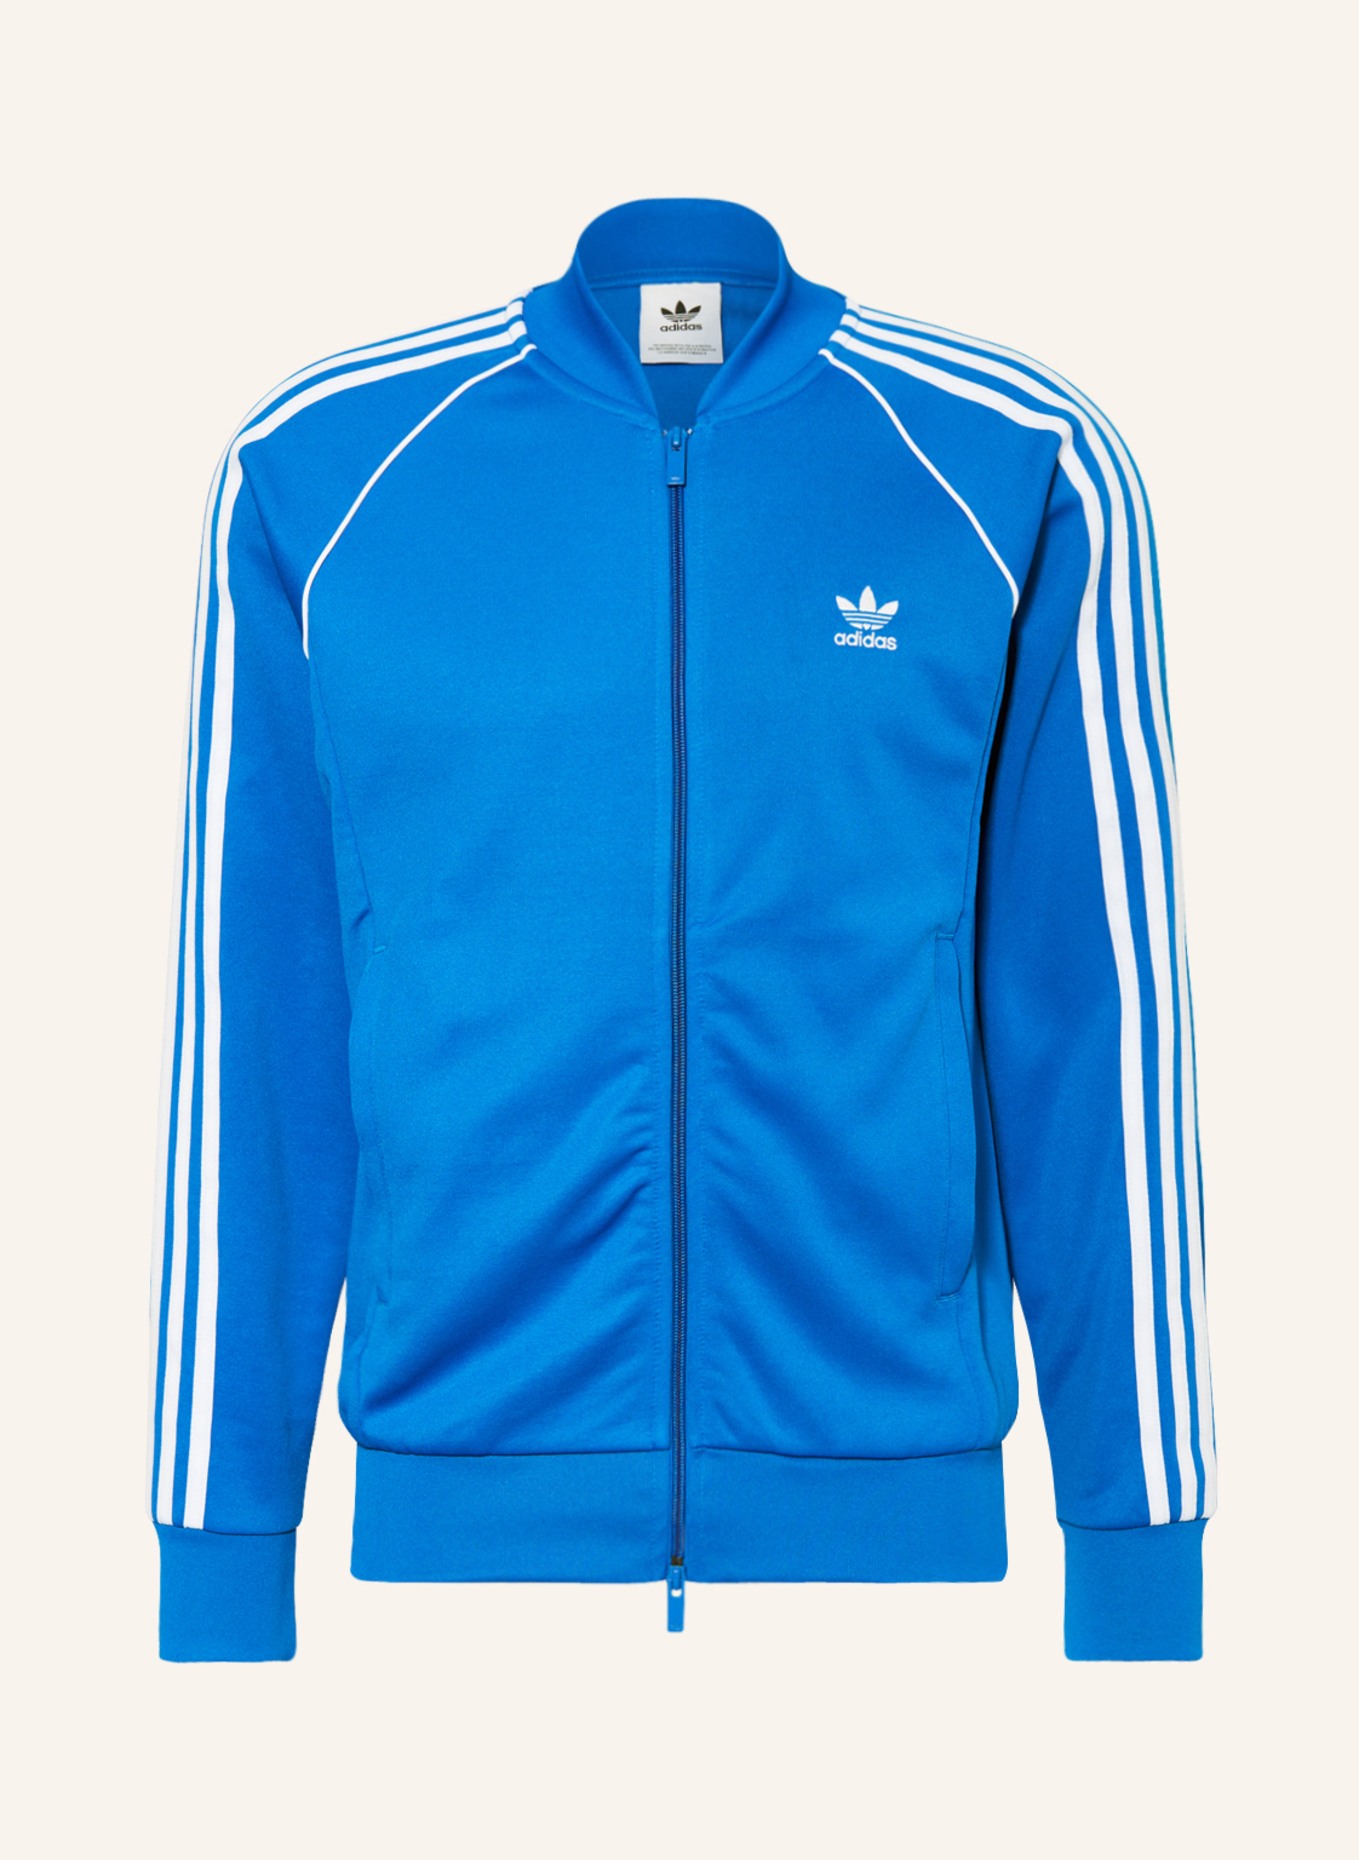 adidas Originals Training jacket in CLASSICS SST ADICOLOR white ORIGINALS blue